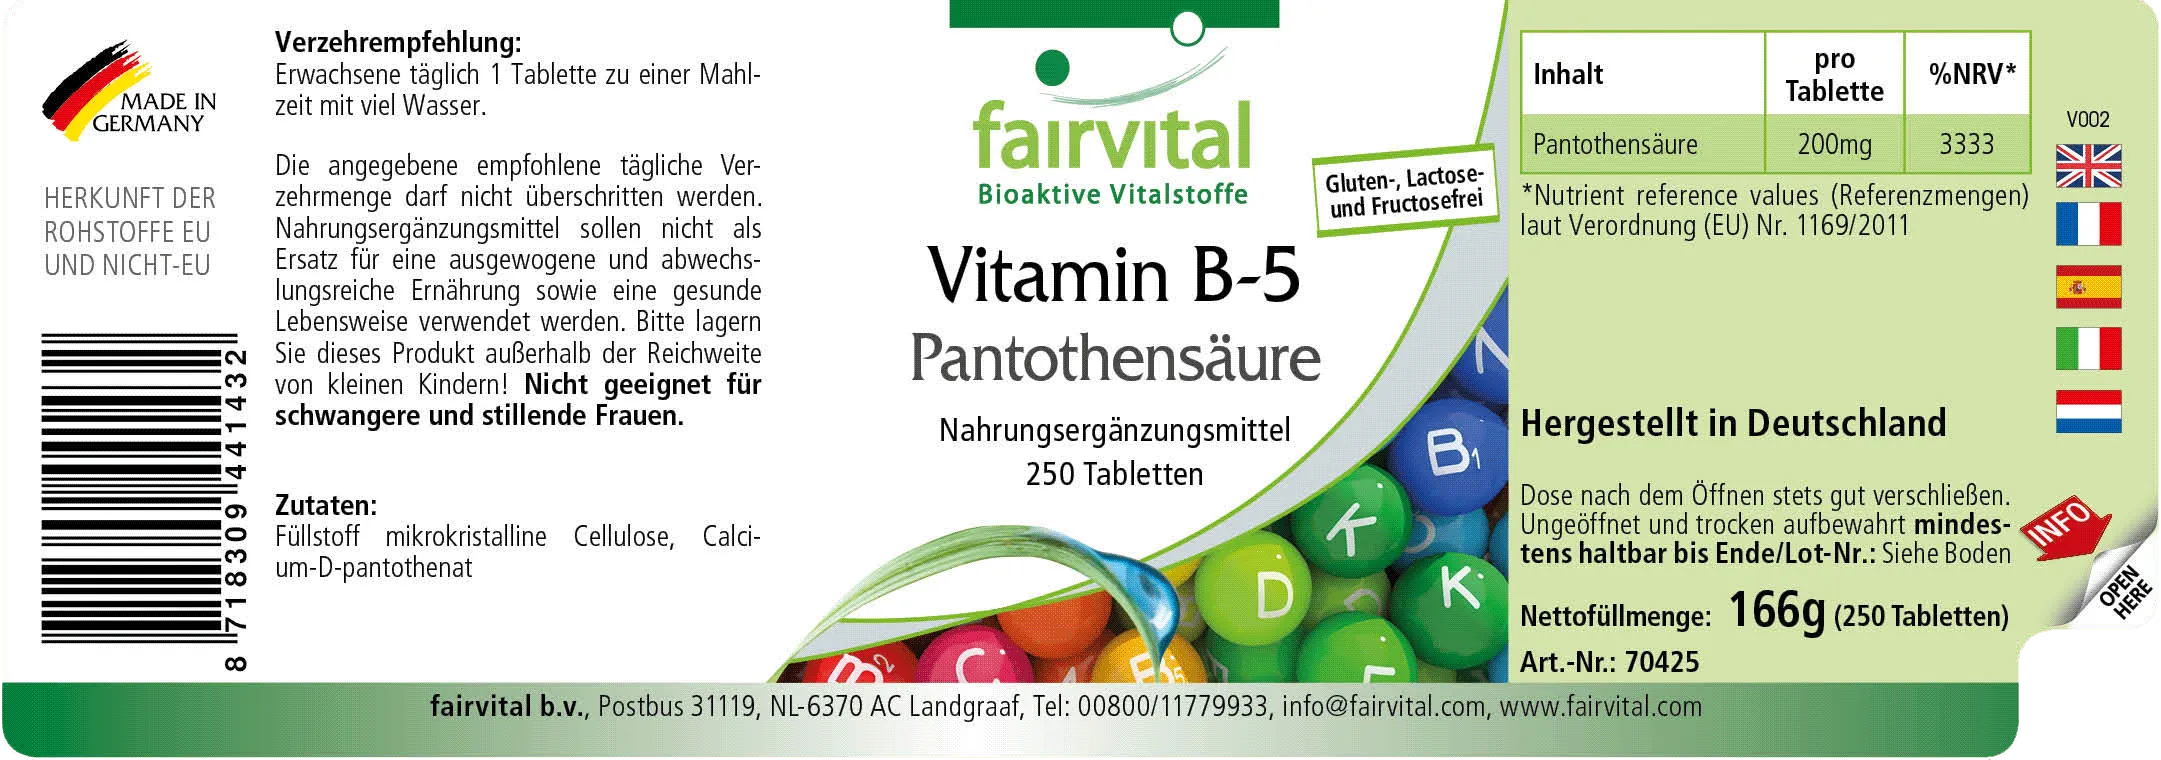 Vitamine B5 acide pantothénique - 250 comprimés